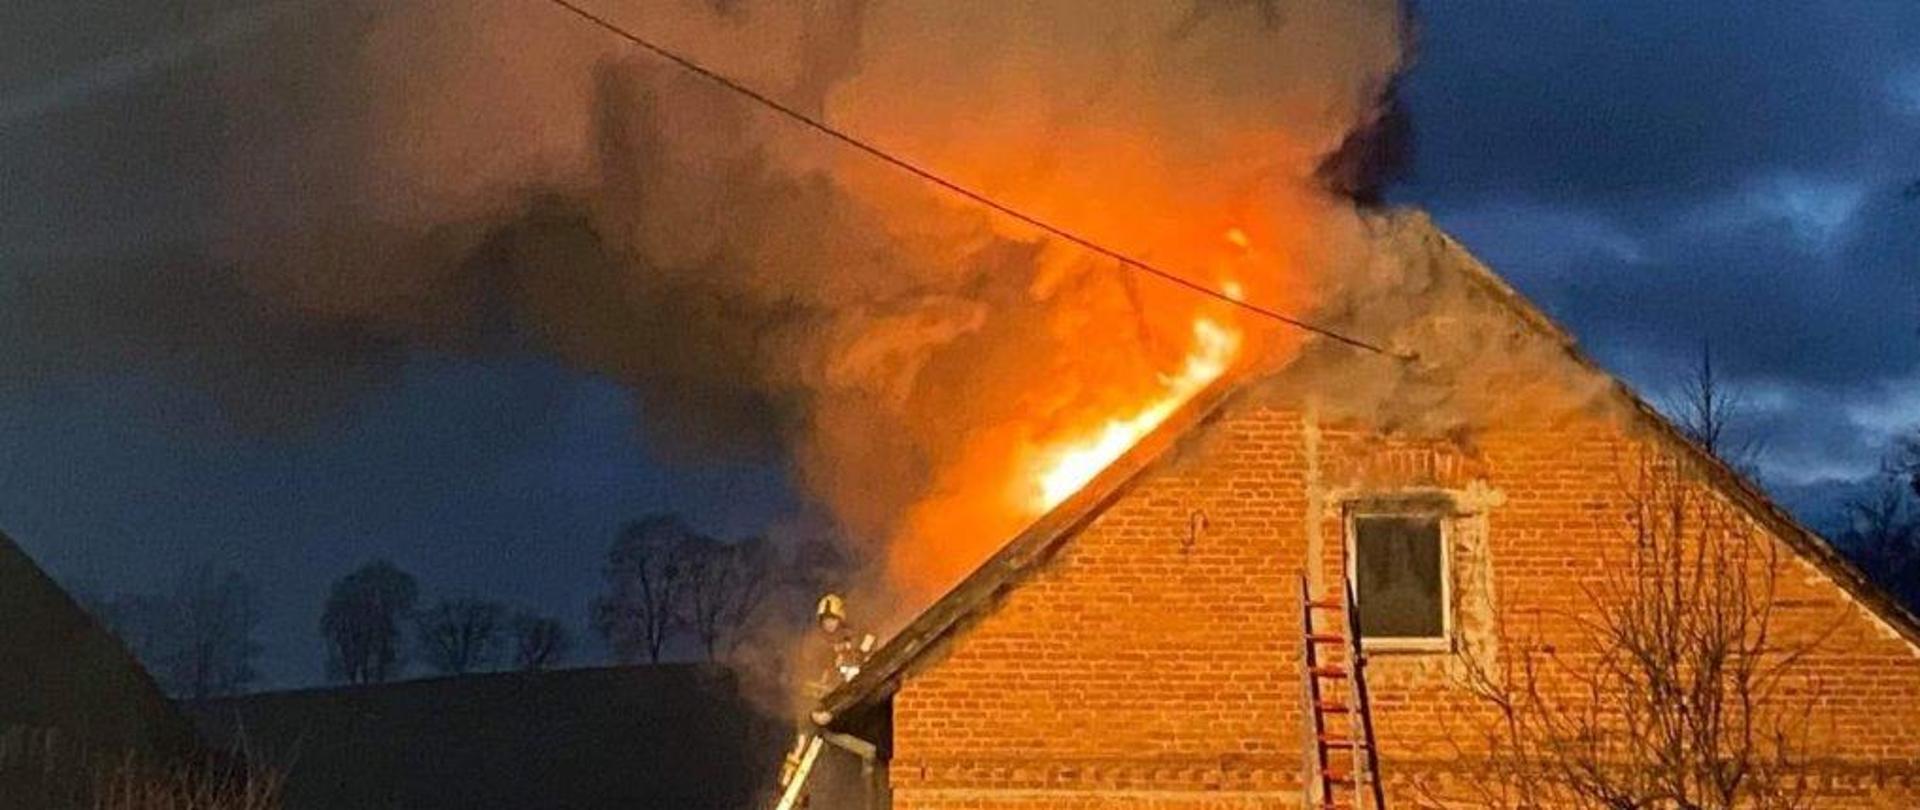 Zdjęcie przedstawia dach budynku mieszkalnego objęty pożarem